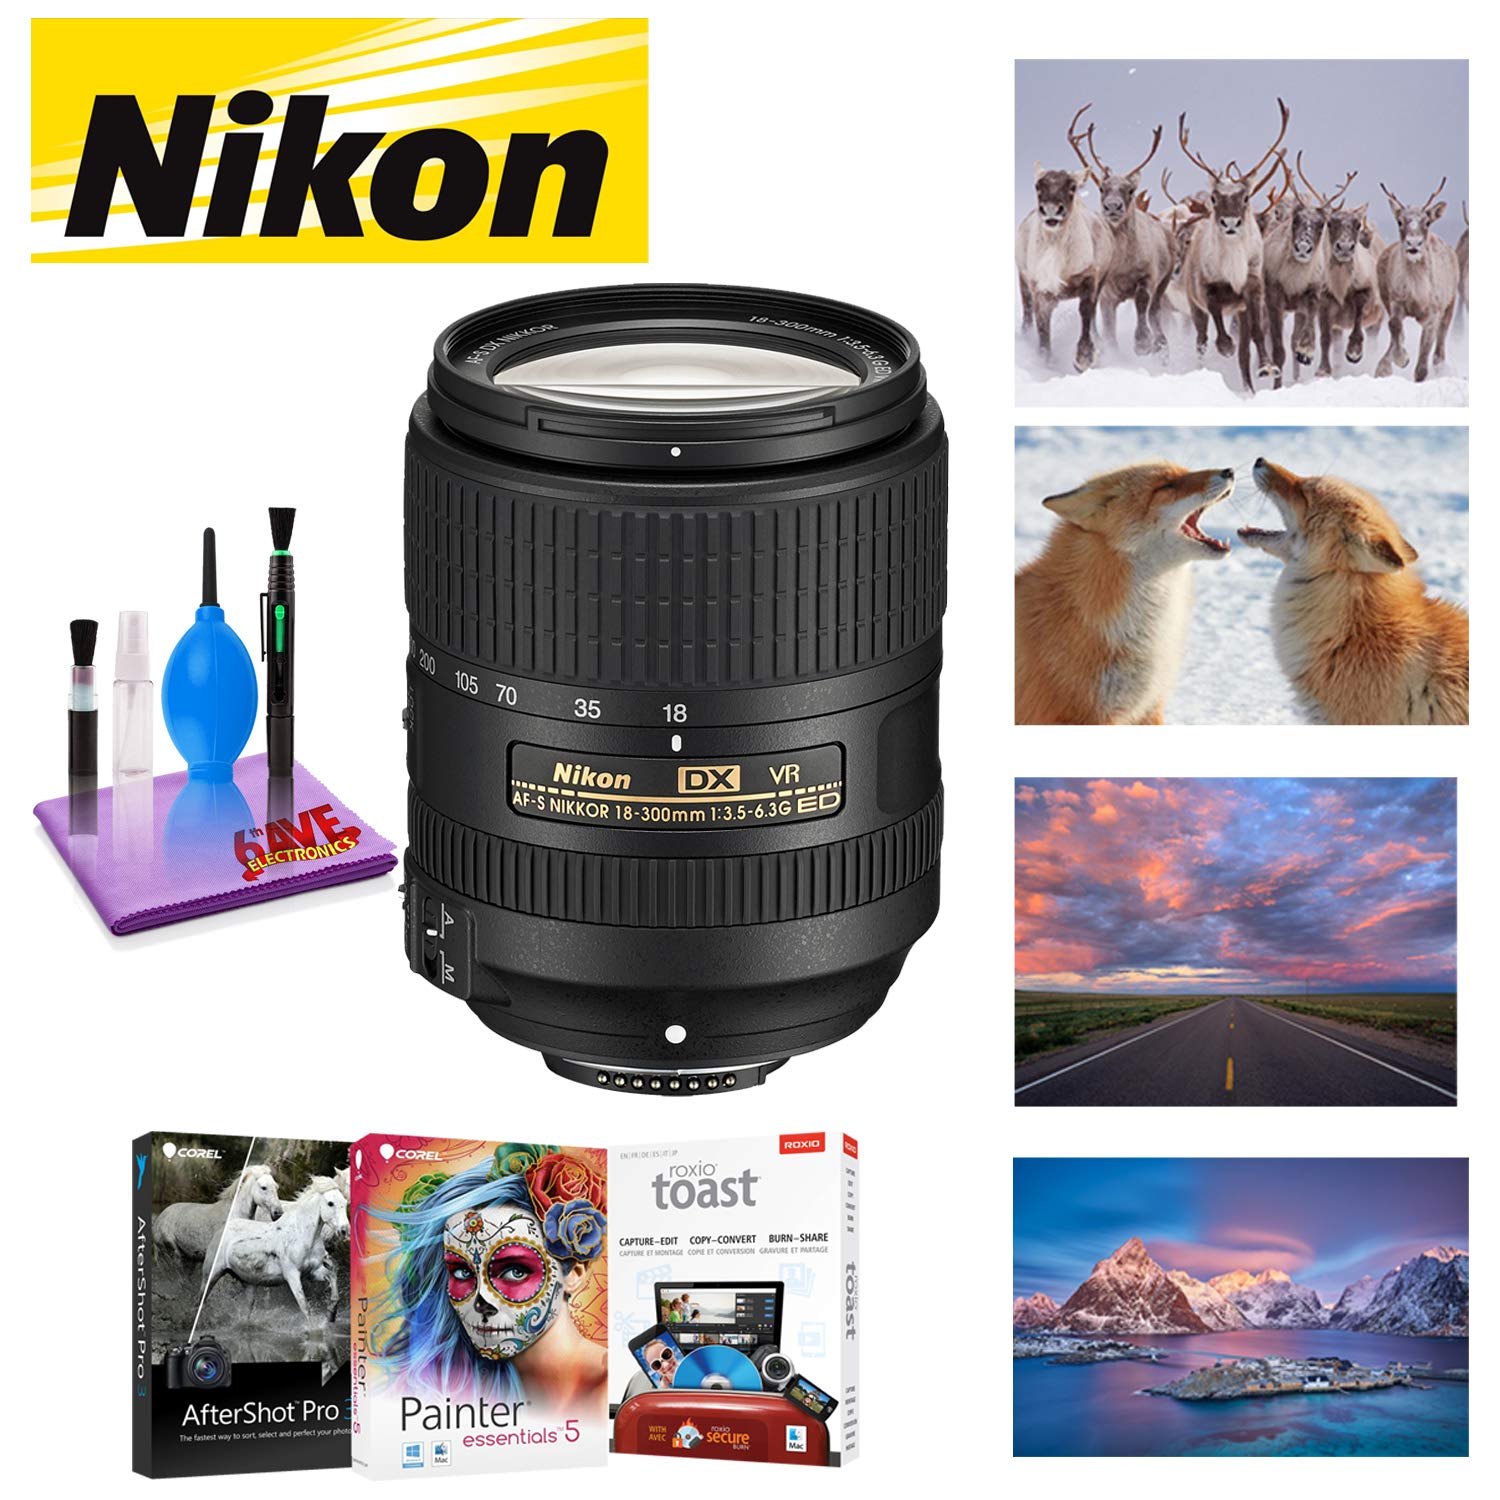 NIKON 18-300MM F/3.5-6.3G ED AF-S DX VR Lens with Corel Mac Photo Essentials Software Kit - Includes Corel AfterShot Bundle